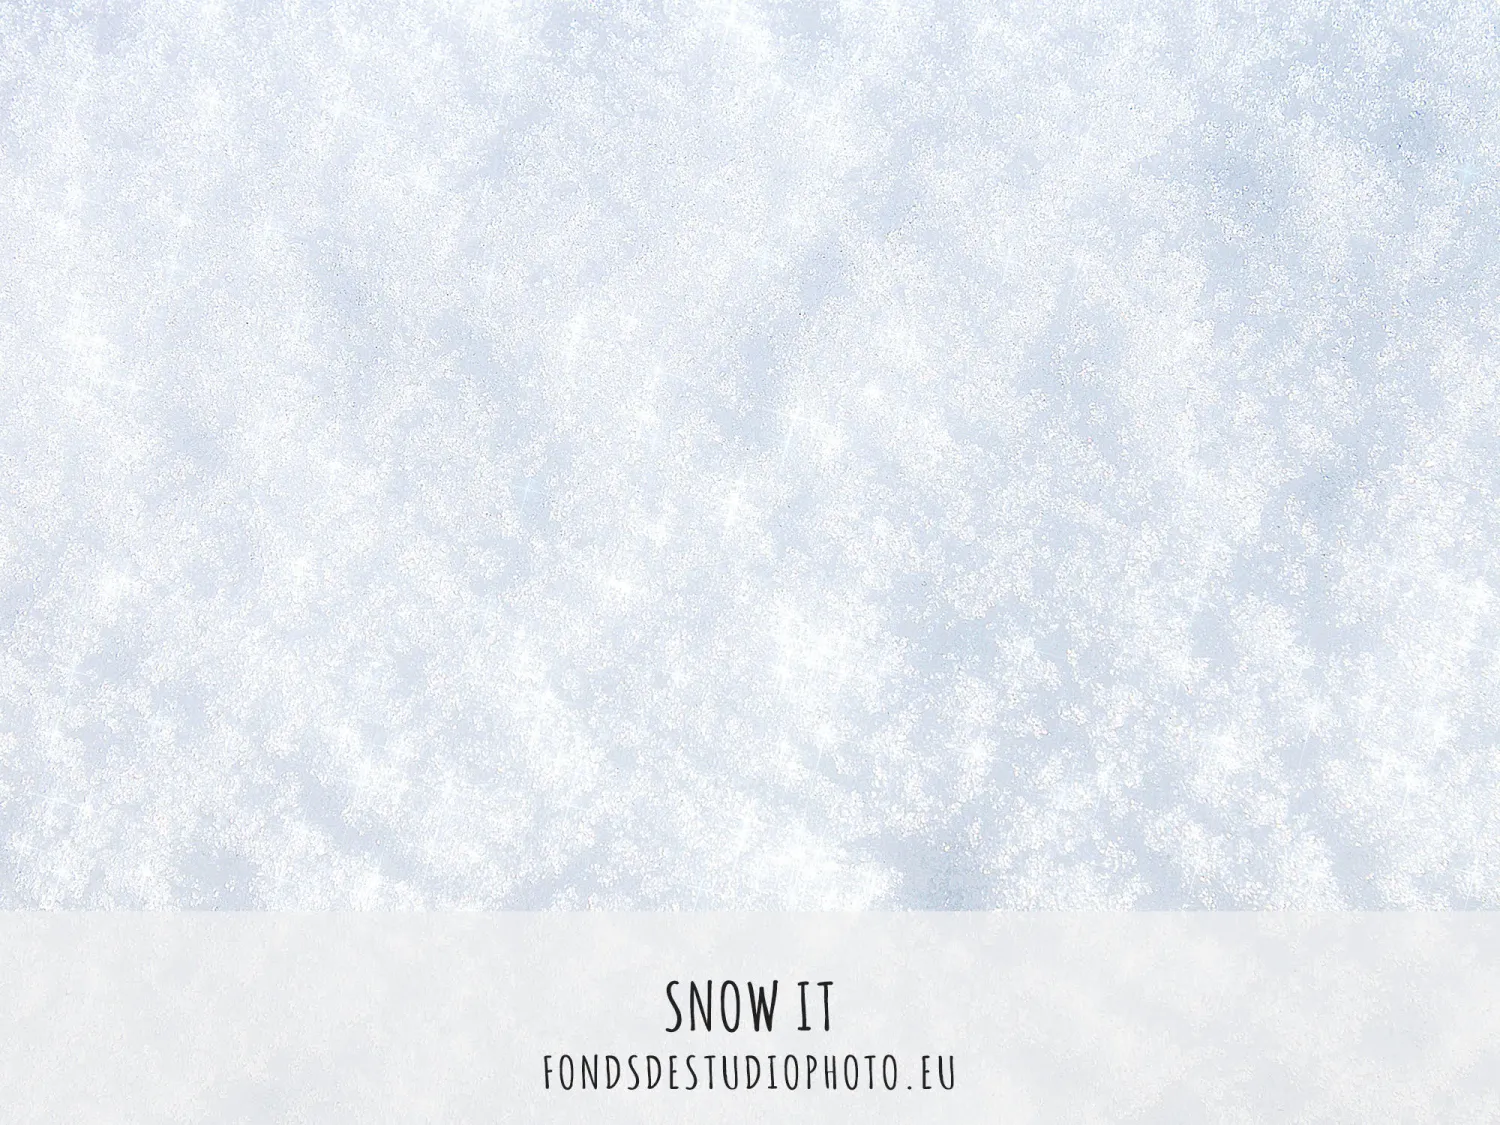 Snow It